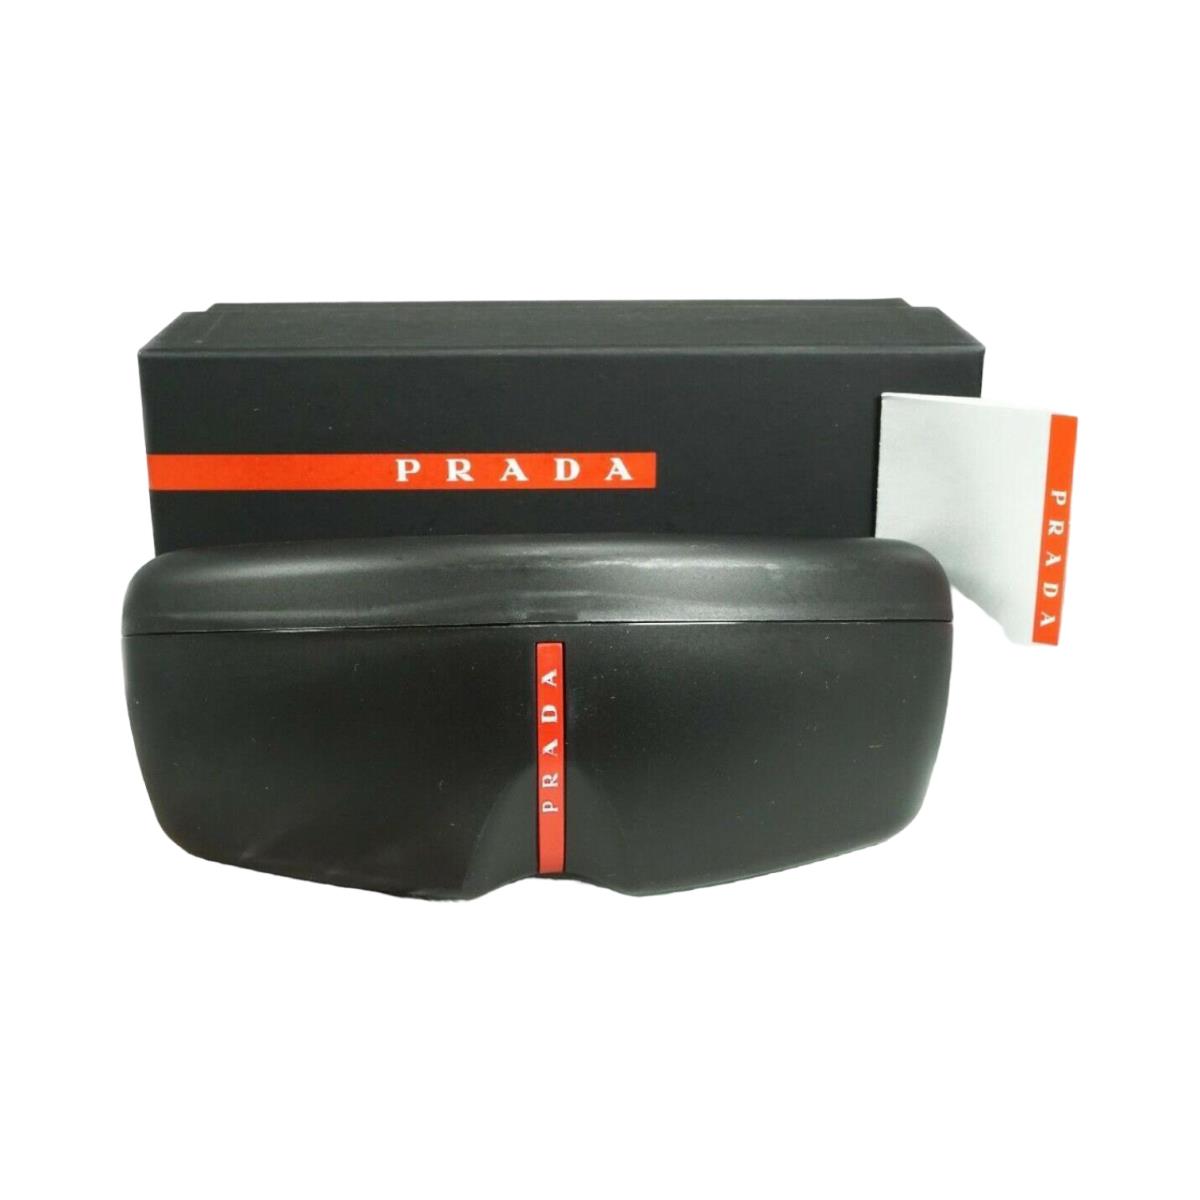 Prada sunglasses Linea Rossa SPS - White Frame, Dark Gray Lens